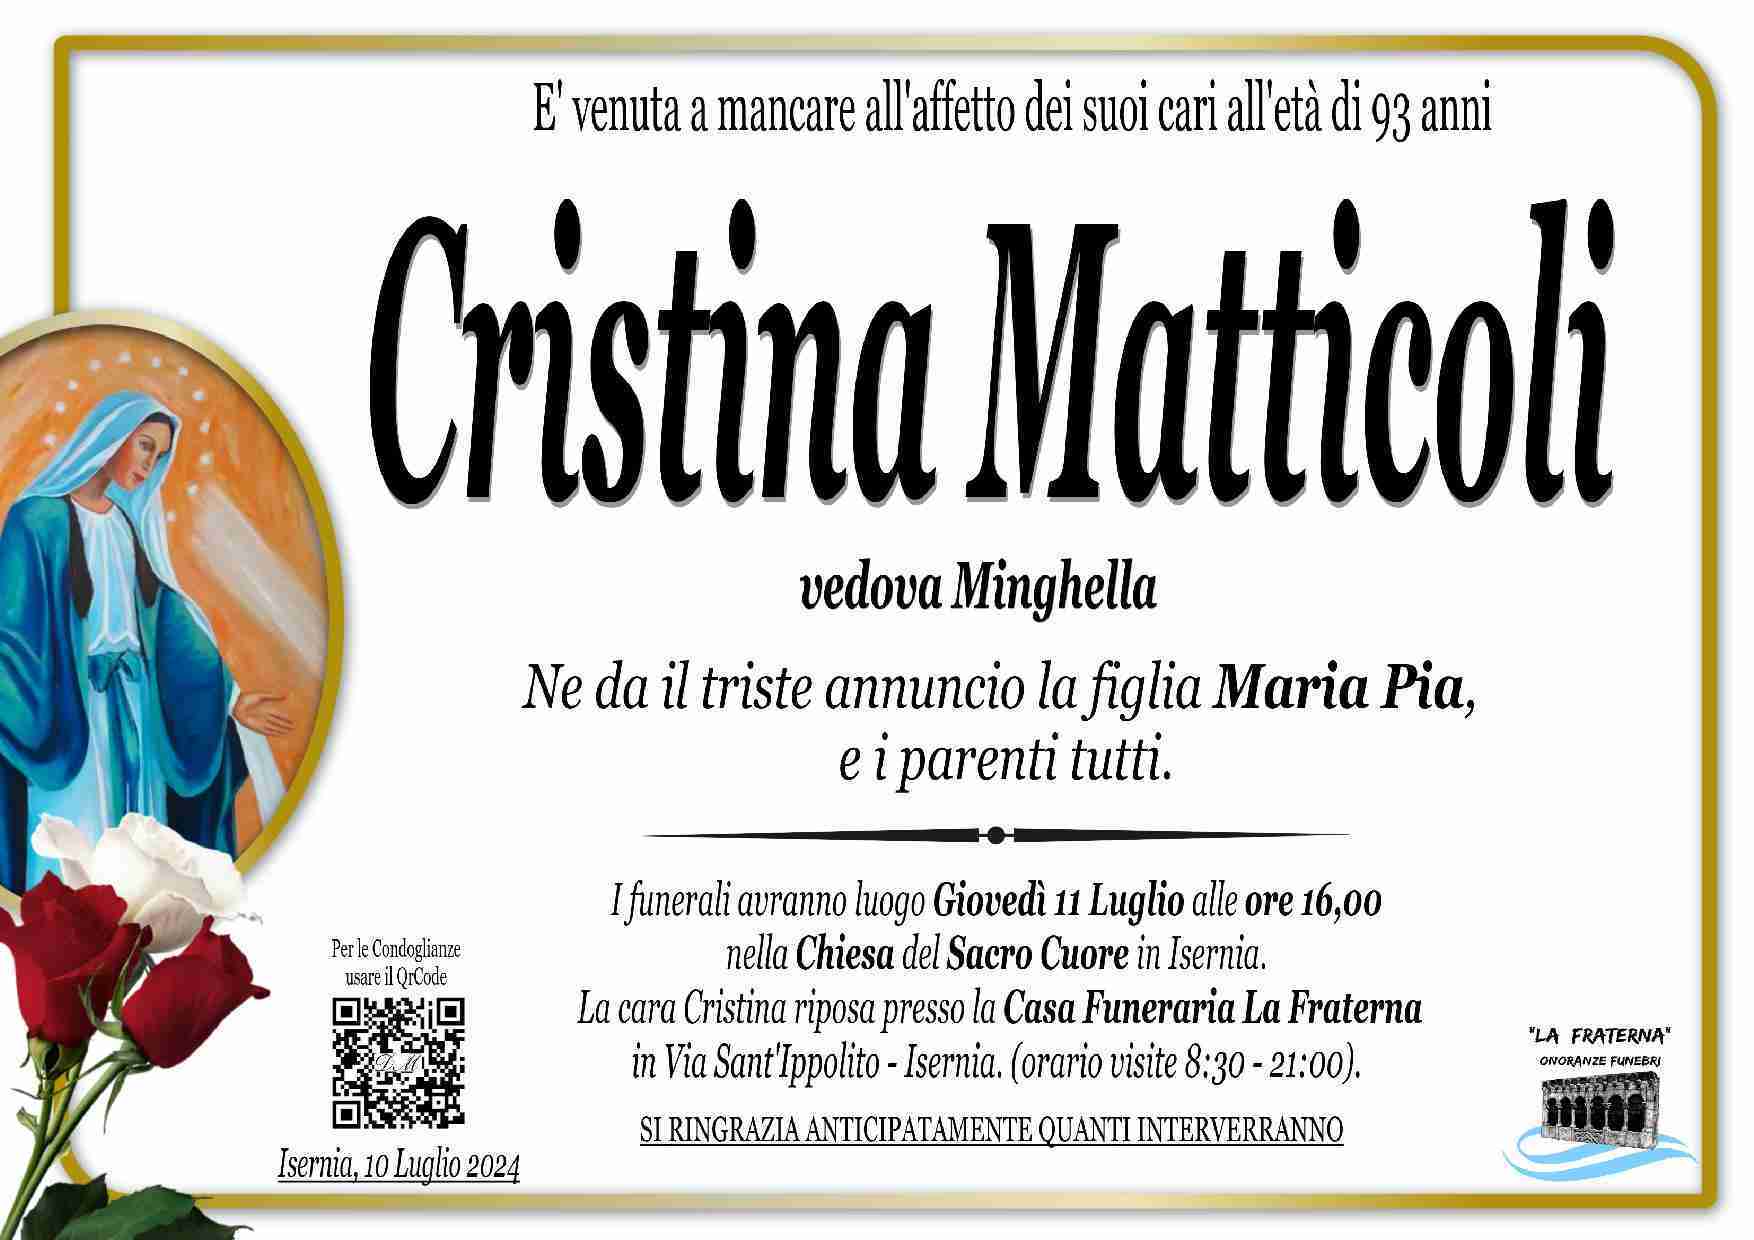 Cristina Matticoli